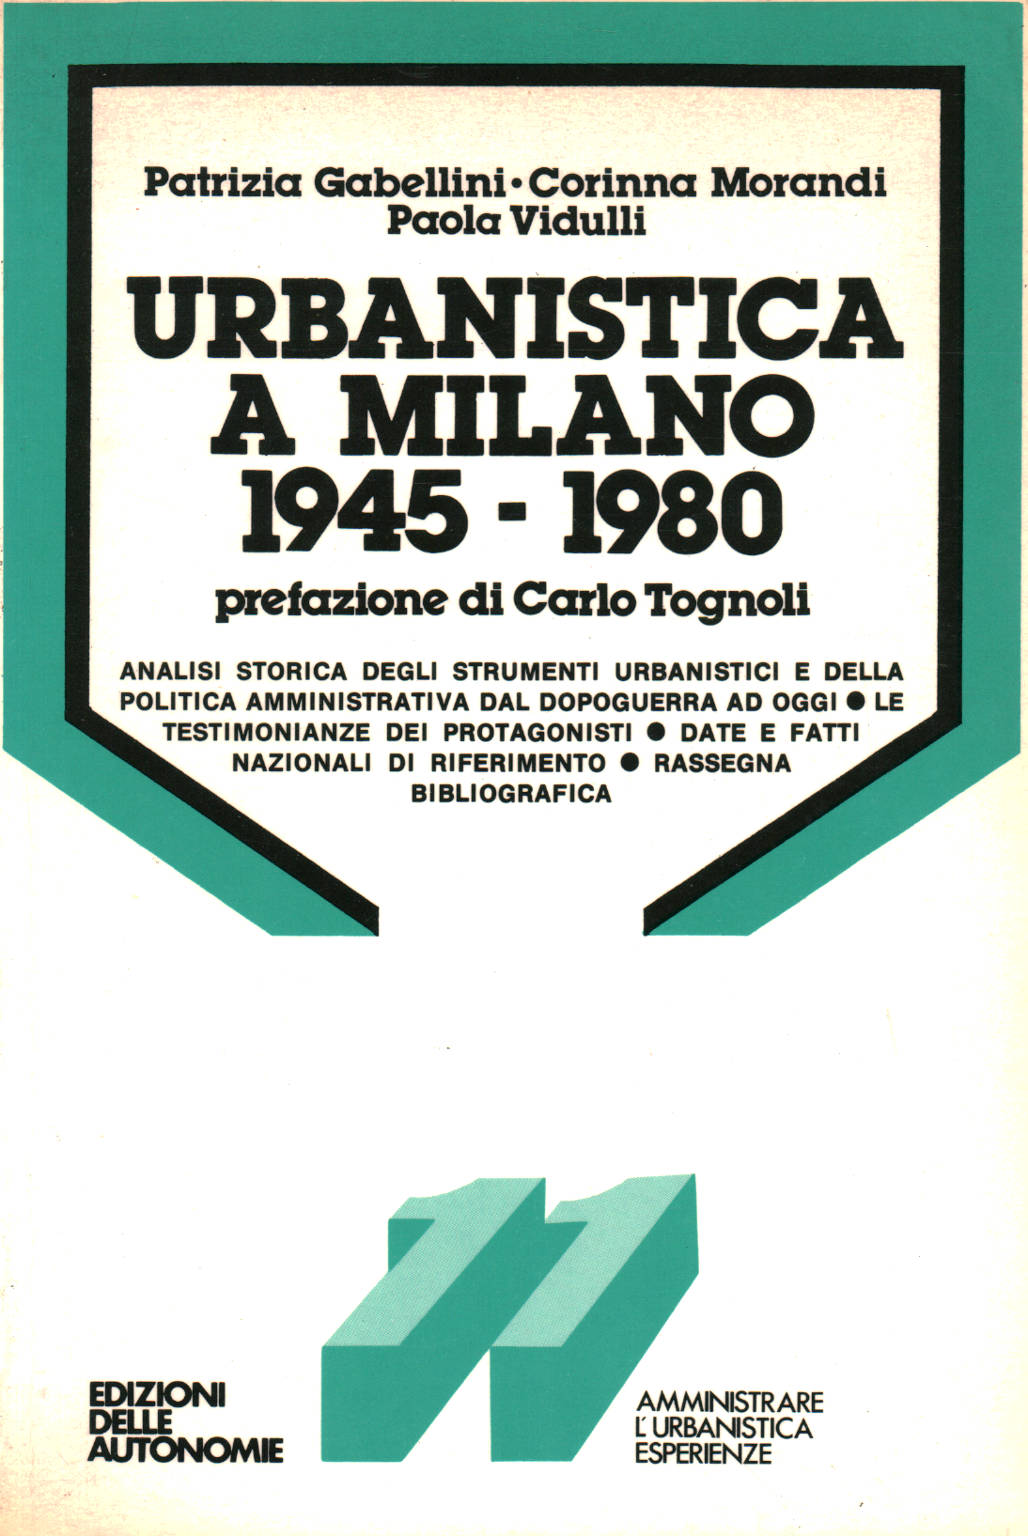 Städtebau in Mailand 1945-1980